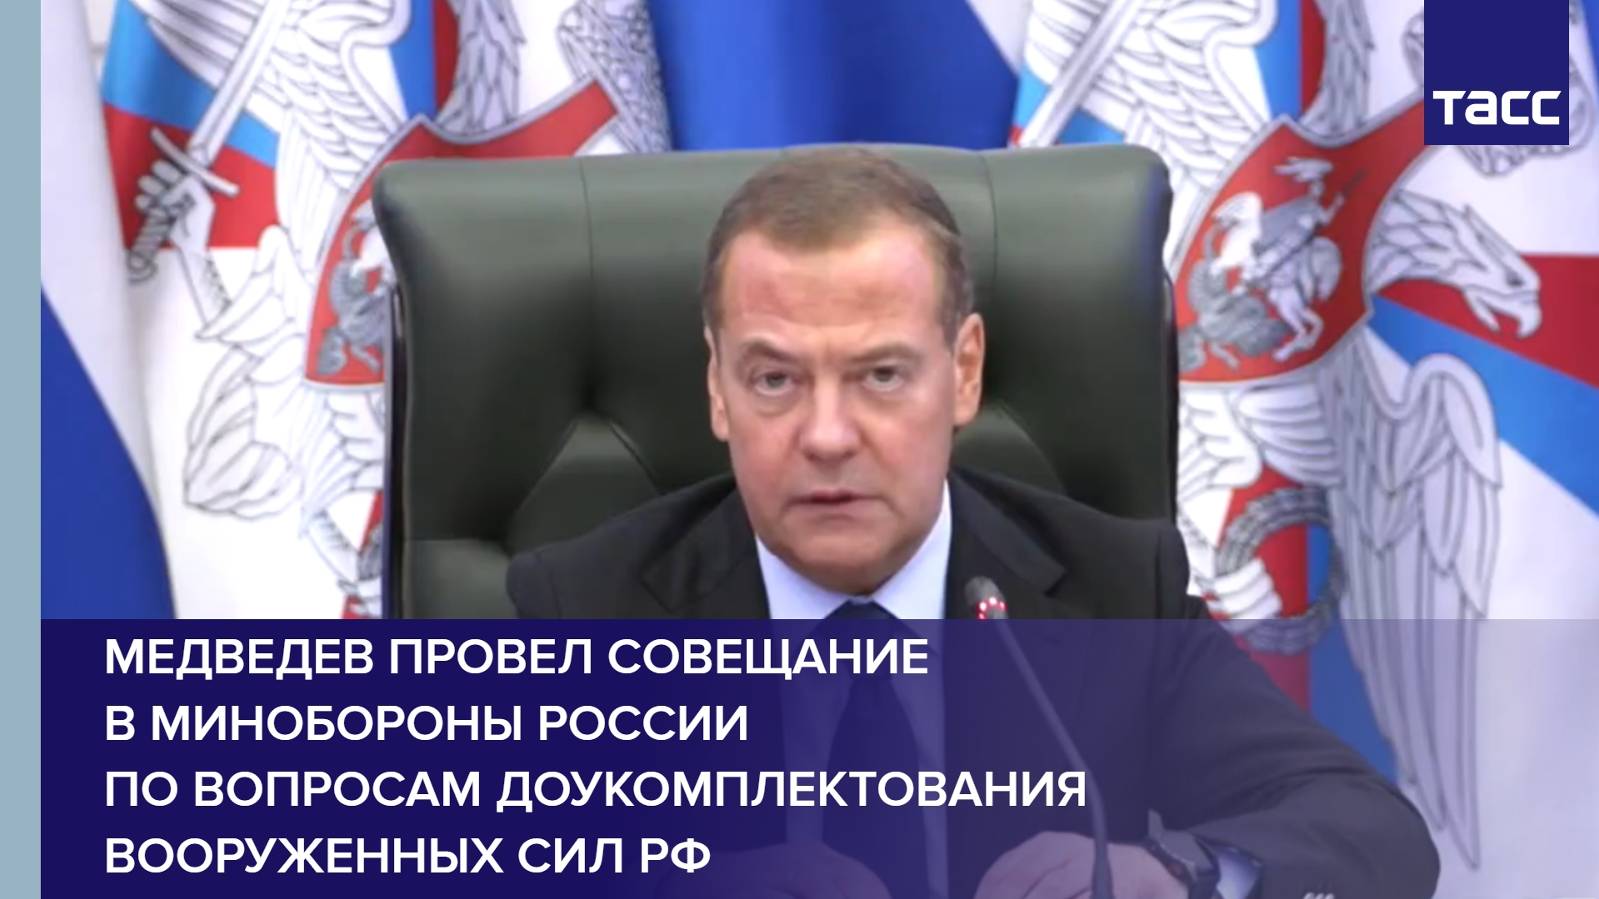 Медведев провел совещание в Минобороны России по вопросам доукомплектования Вооруженных сил РФ